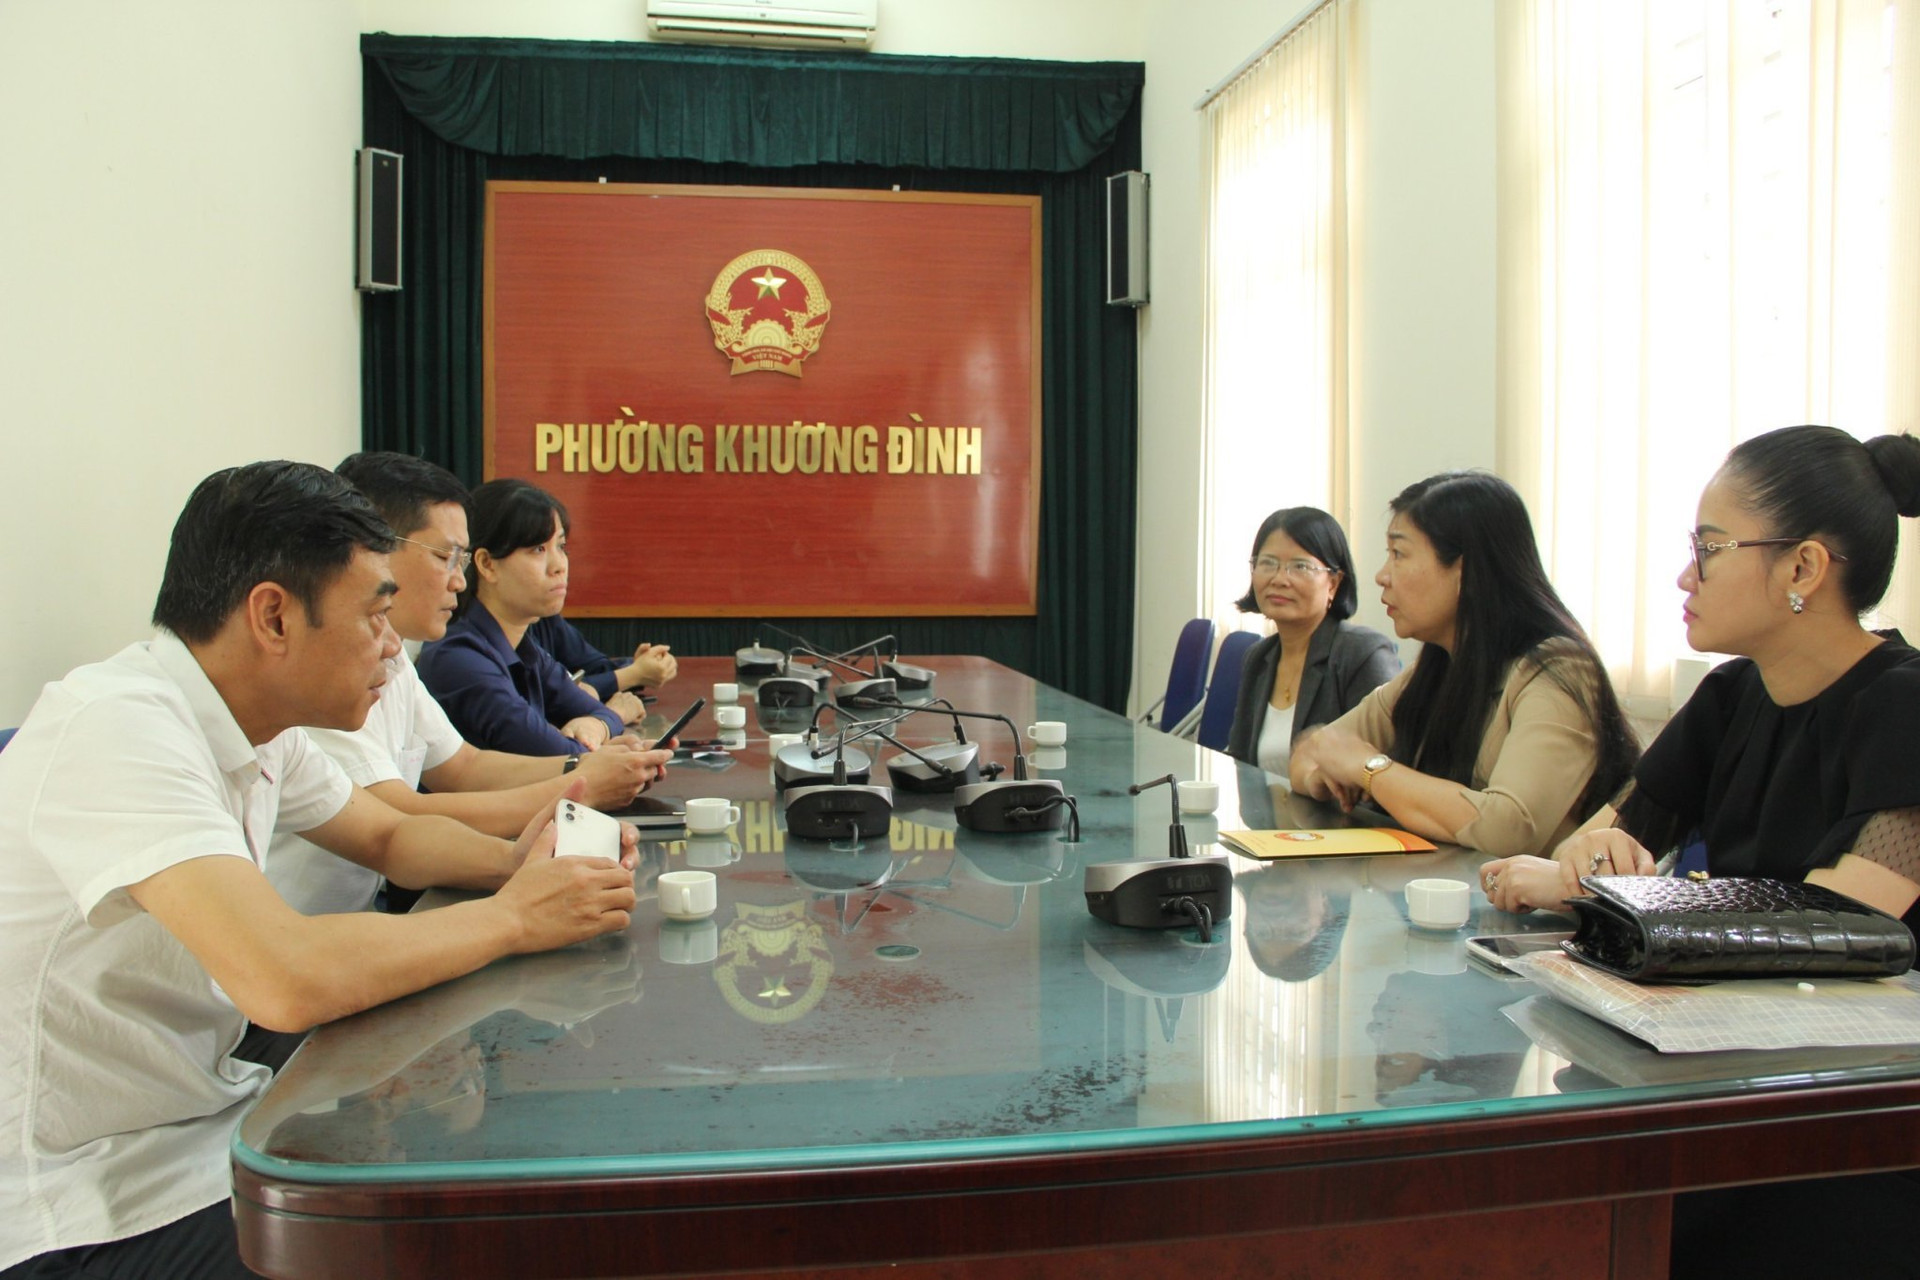 Chủ tịch MTTQ thành phố Hà Nội kiểm tra công tác công tác tiếp nhận hỗ trợ tại phường Khương Đình. tiếp nhận 